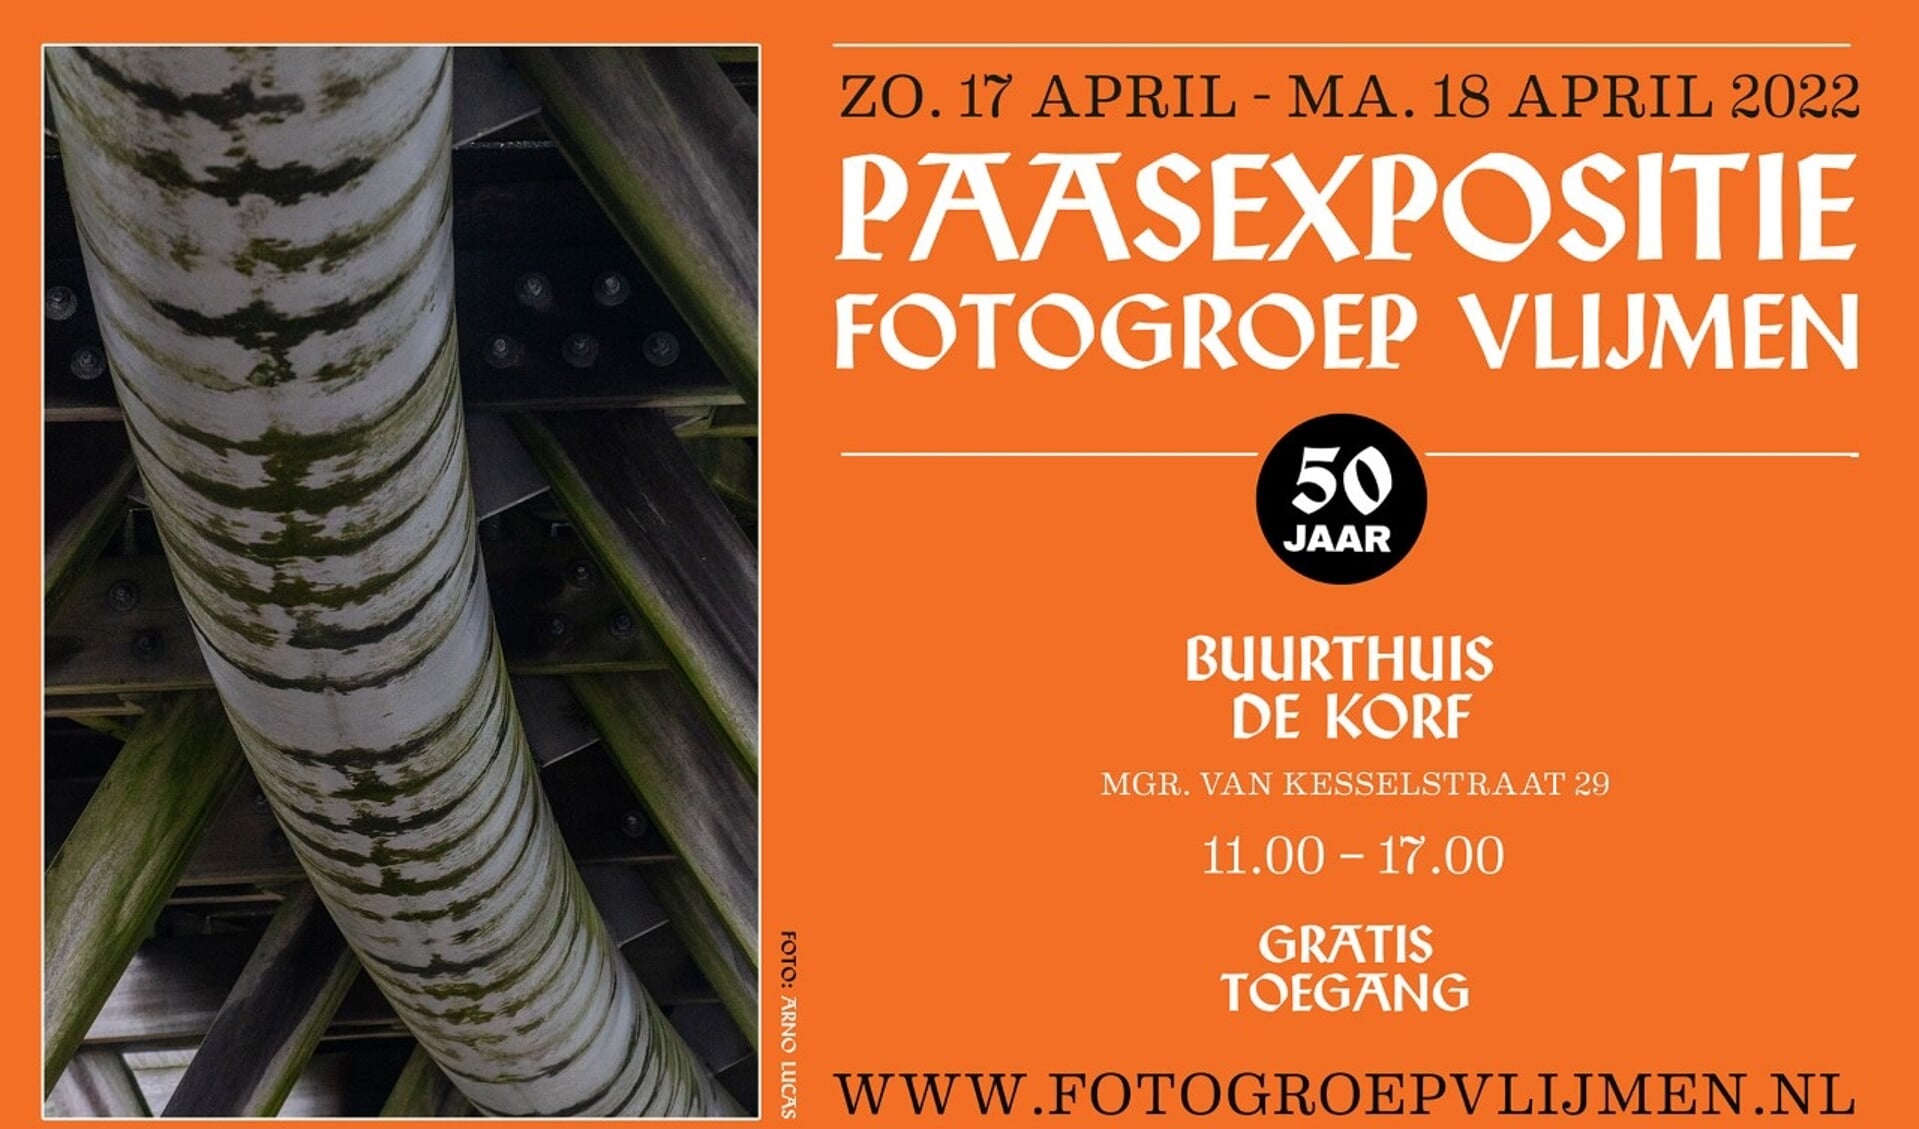 Fotogroep Vlijmen houdt haar Paasexpositie op zondag 17 en maandag 18 april (1e en 2e Paasdag).